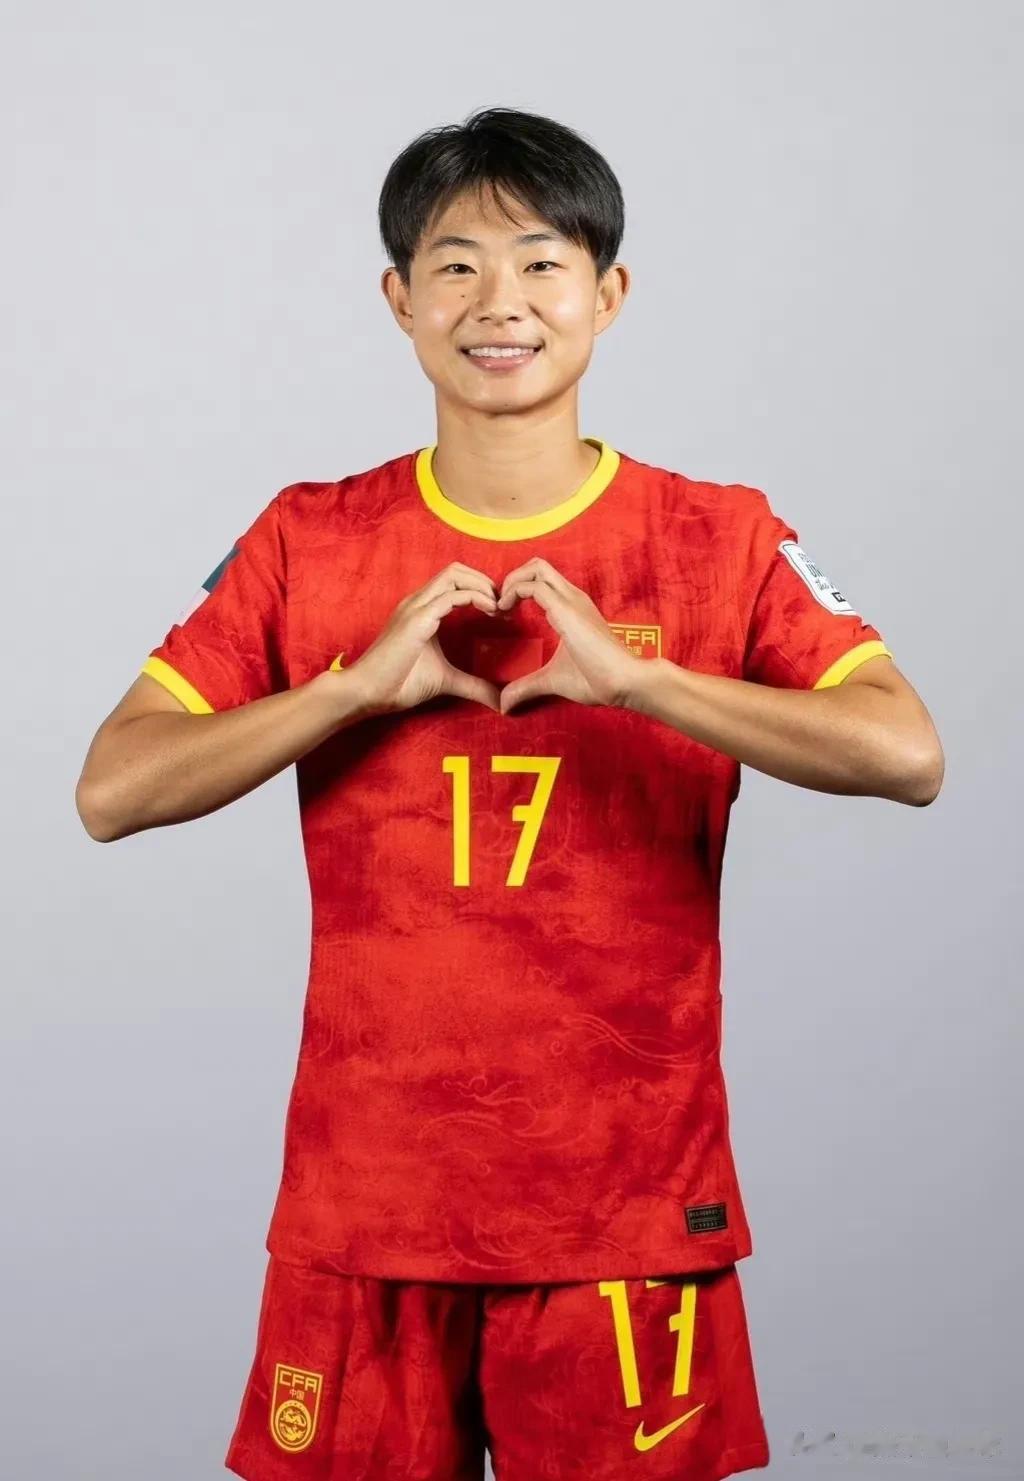 插播一条足球，给中国姑娘加油！祝中国姑娘22号世界杯首场凯旋！

分享一下姑娘们(5)